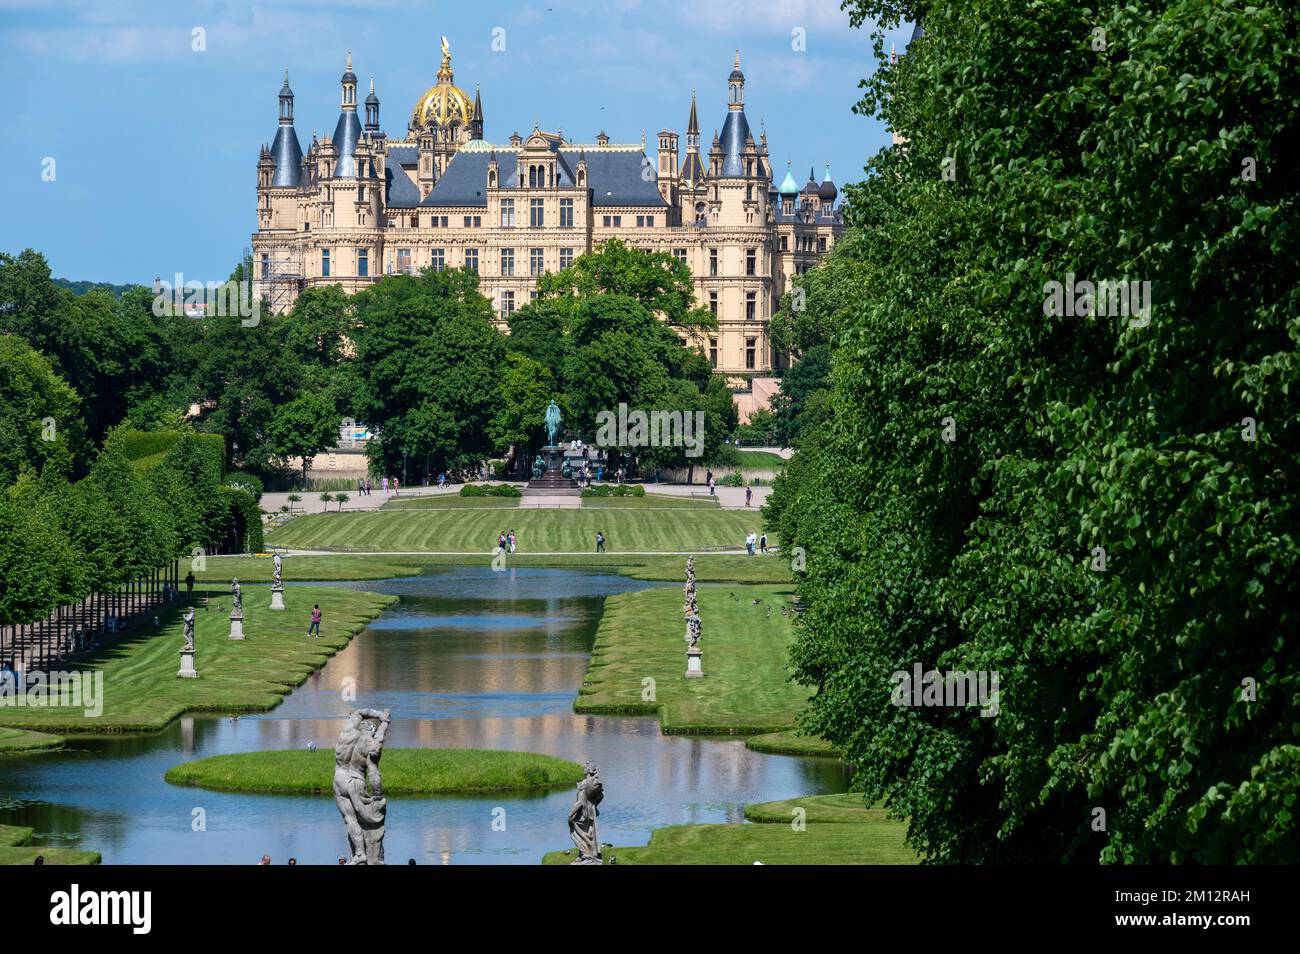 Germania, Meclemburgo-Pomerania occidentale, capitale dello stato Schwerin, castello di Schwerin, giardino del castello con canale trasversale Foto Stock